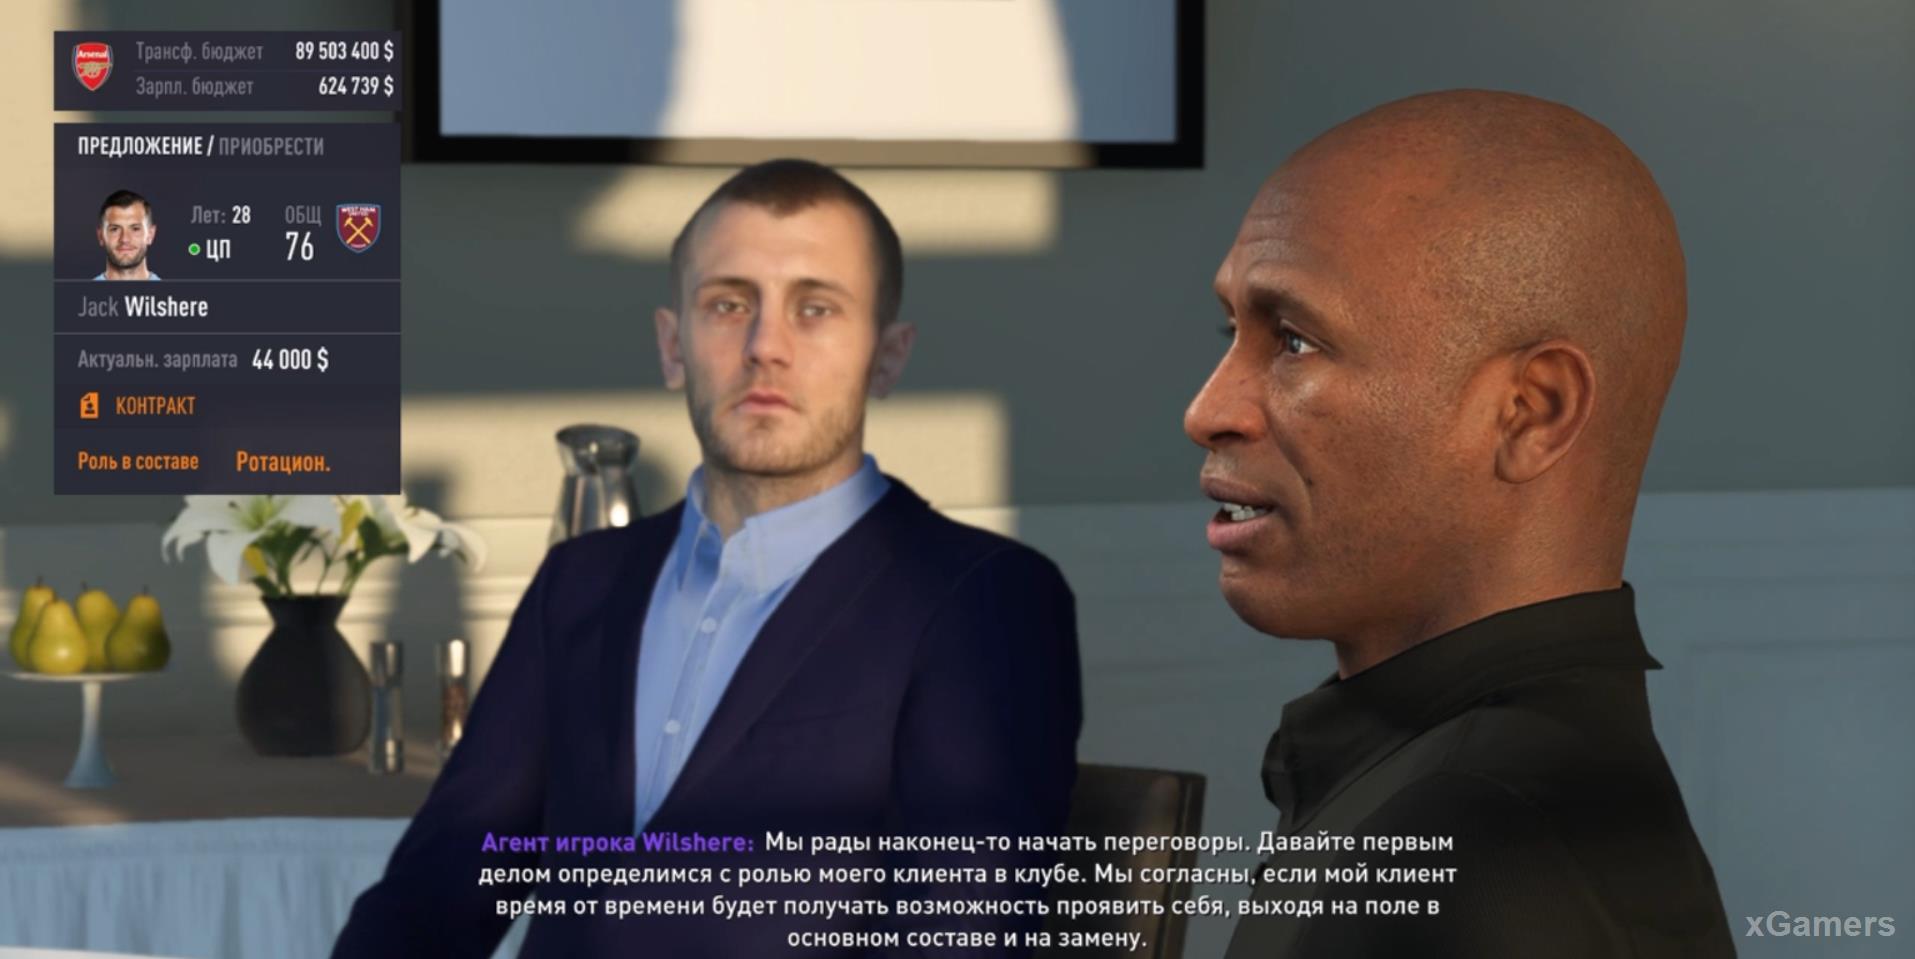 Скриншот с трансферными переговорами в режиме карьеры в FIFA 21